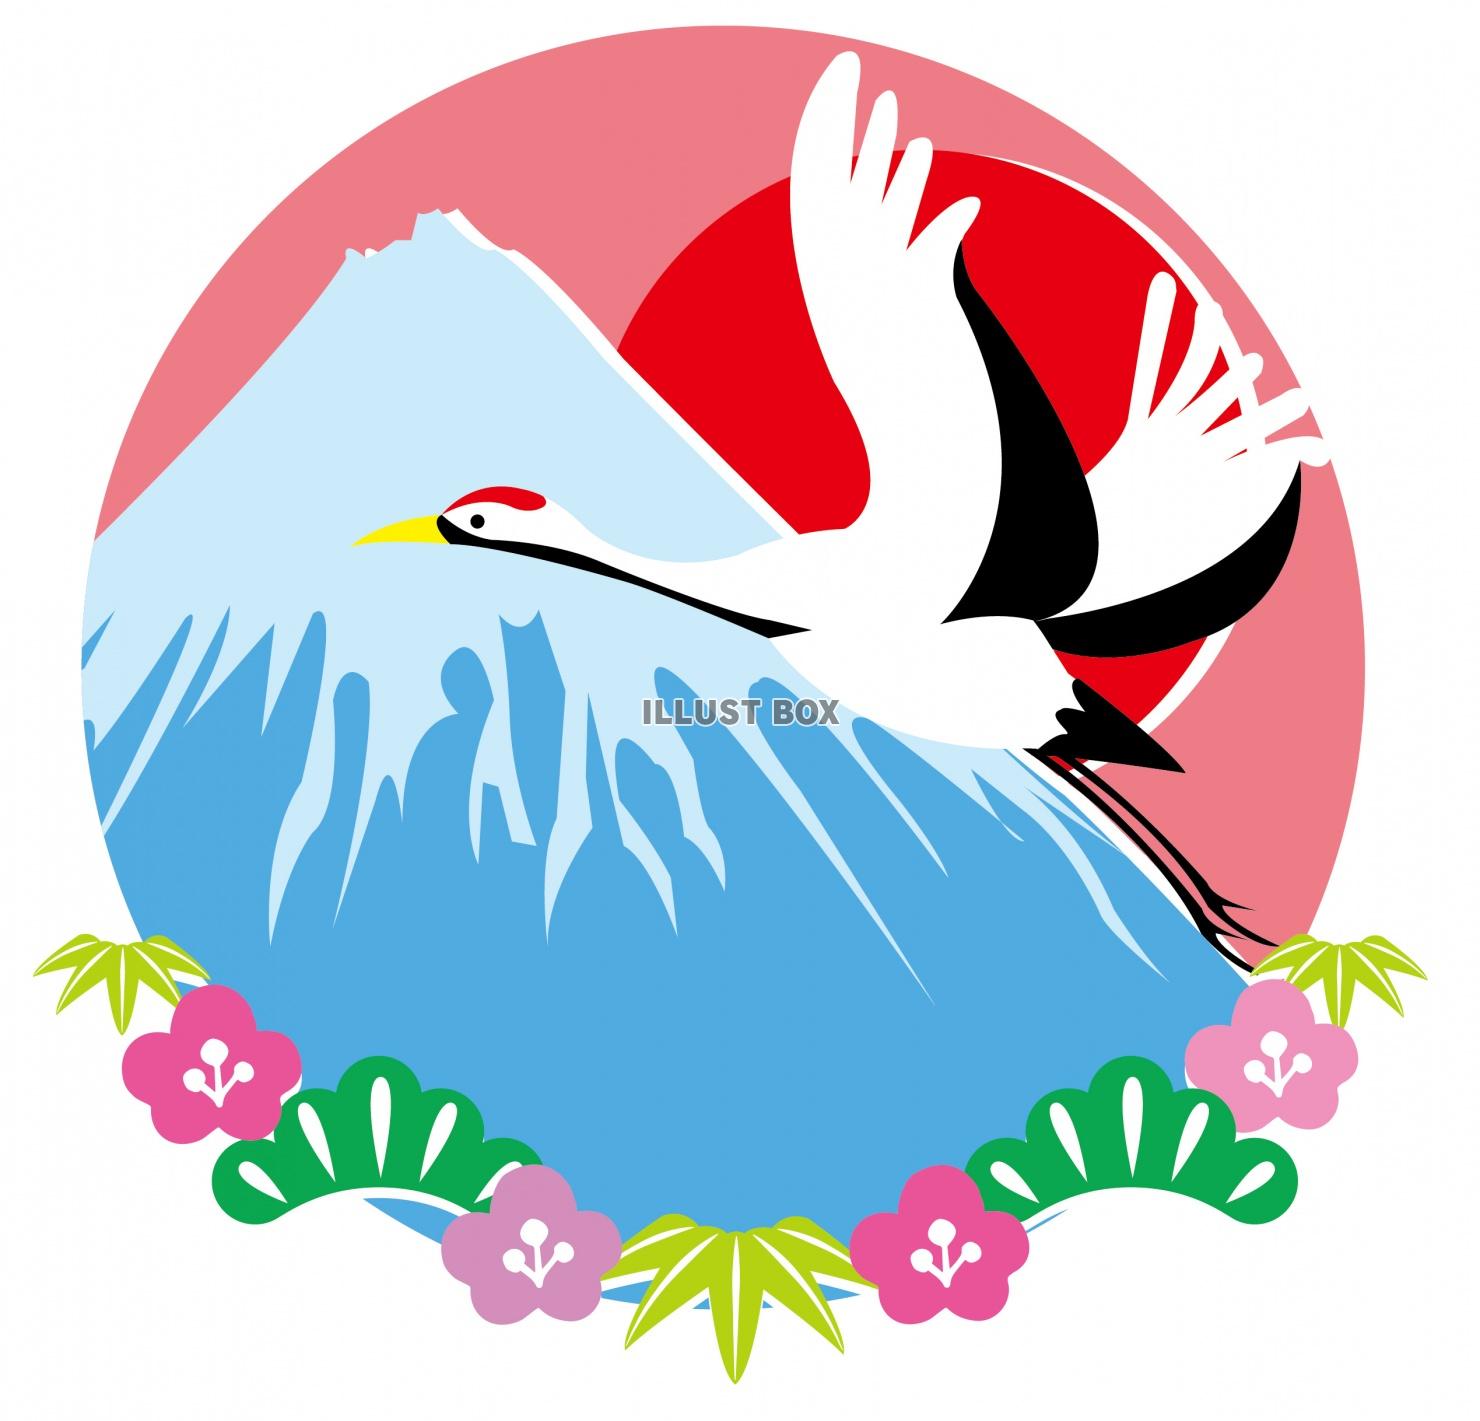 無料イラスト お正月 年賀状 富士山と鶴と松竹梅 カラー